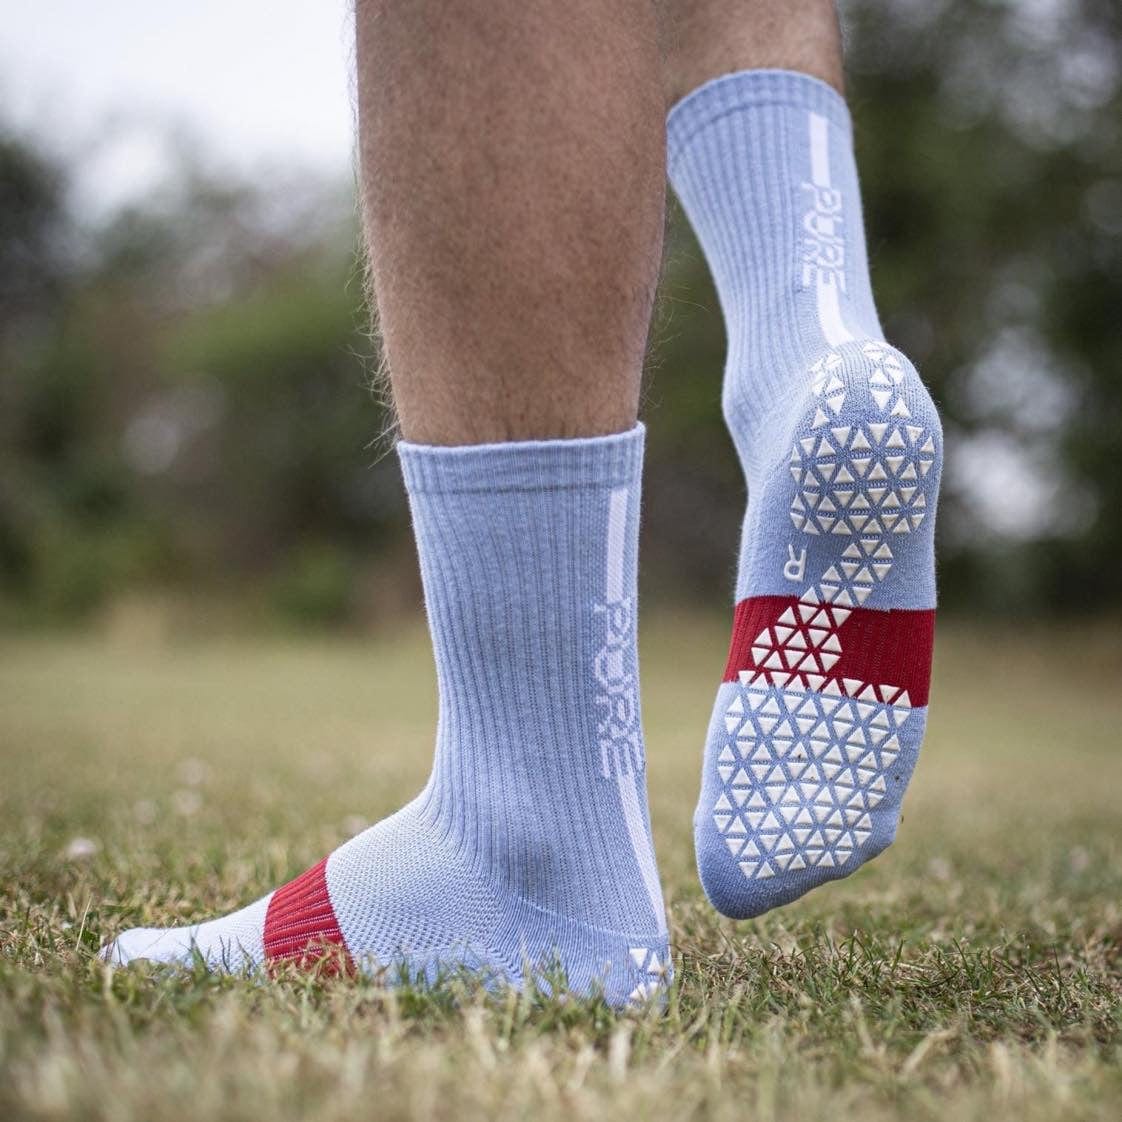 Pure Grip Socks Pro White - Soccer Socks - Premium Soccer